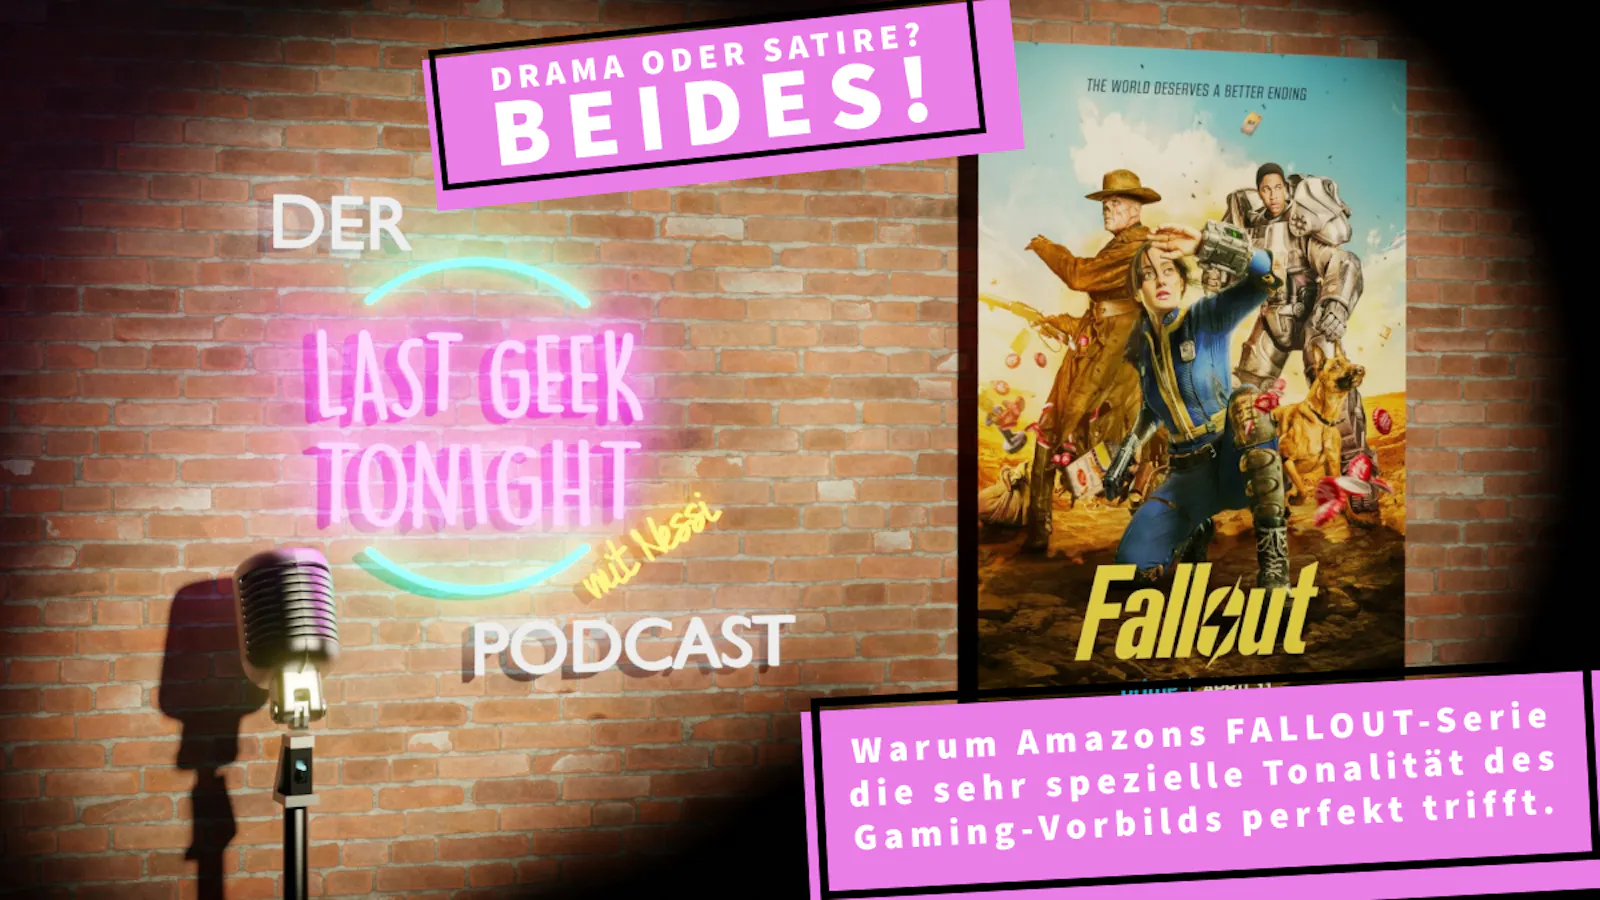 Der LGT-Podcast #013: Fallout – Staffel 1